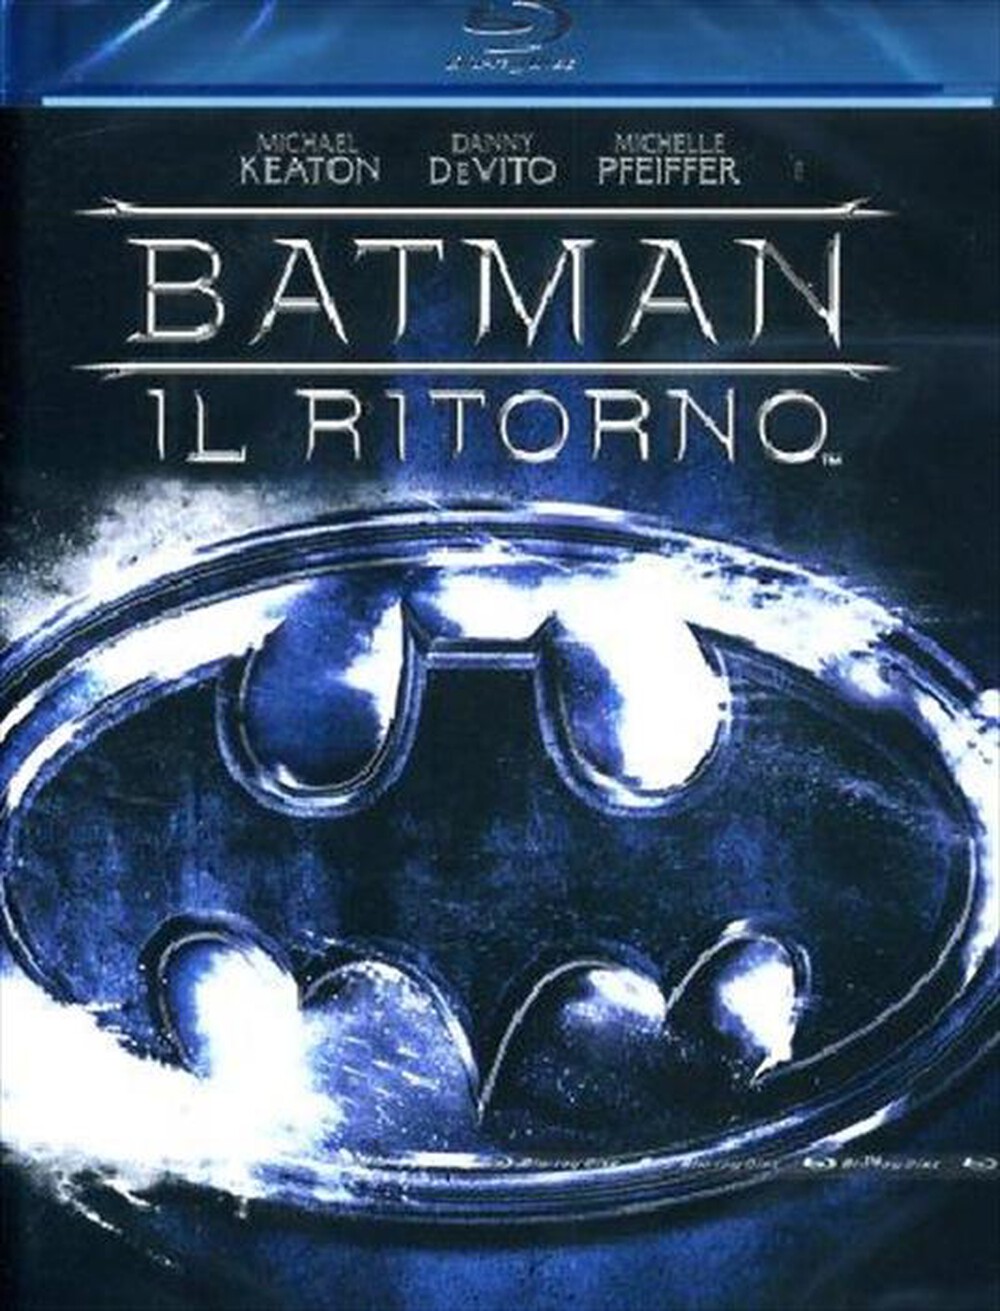 "WARNER HOME VIDEO - Batman Il Ritorno"